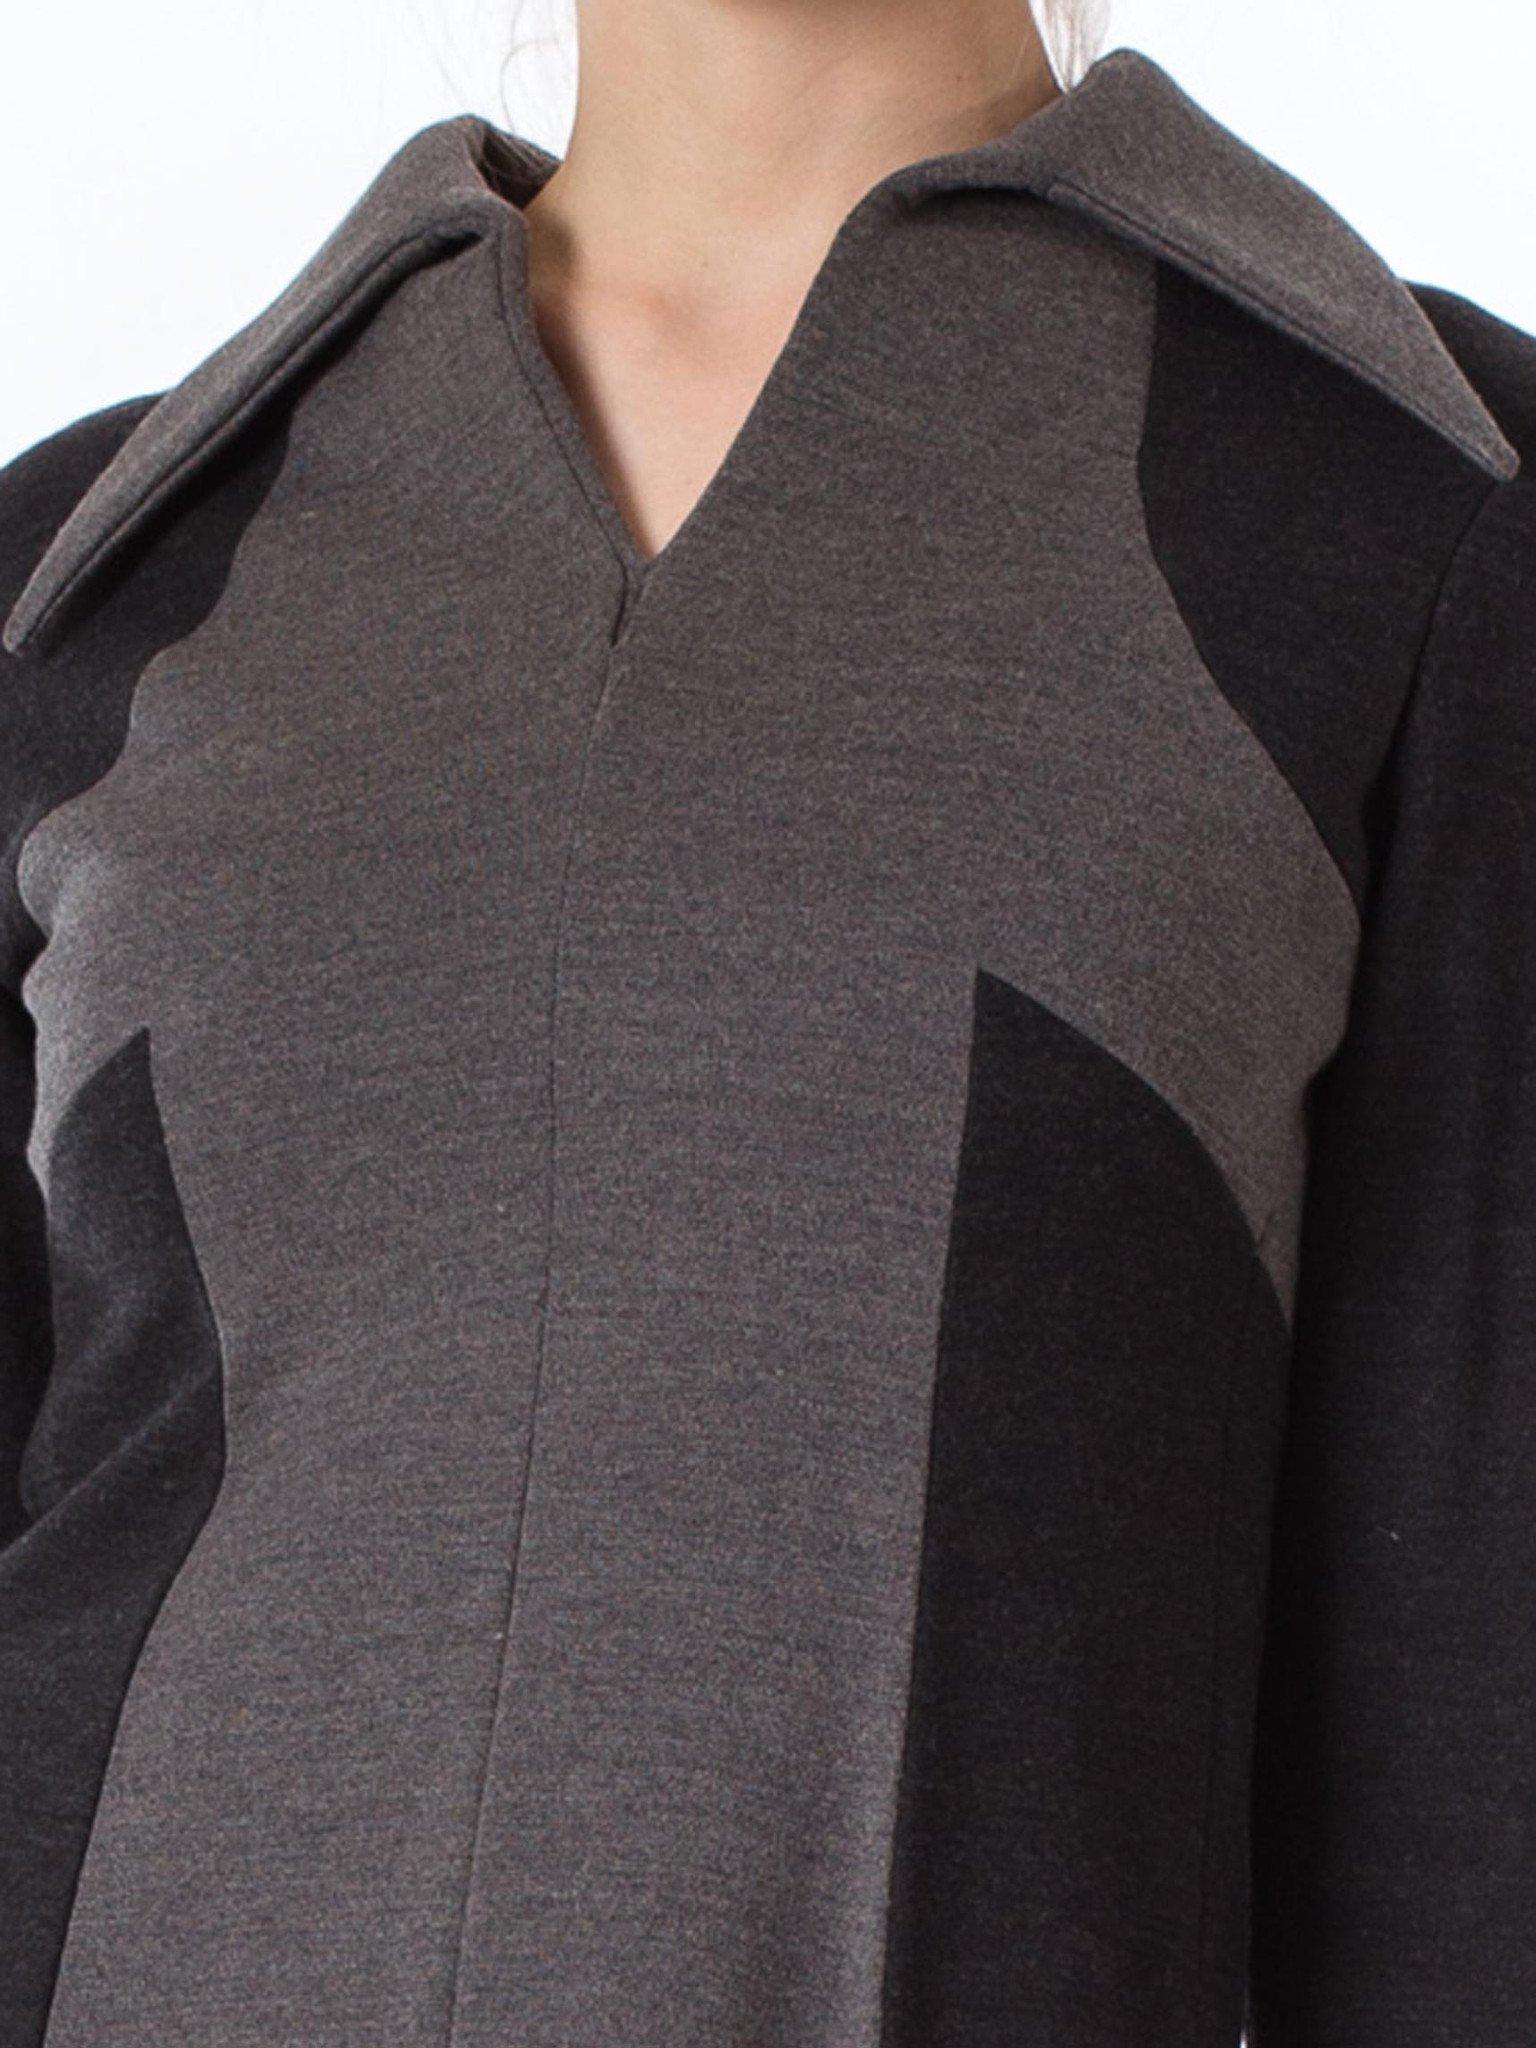 Women's 1960S Black & Grey Wool Knit Mod Long Sleeve Dress For Sale